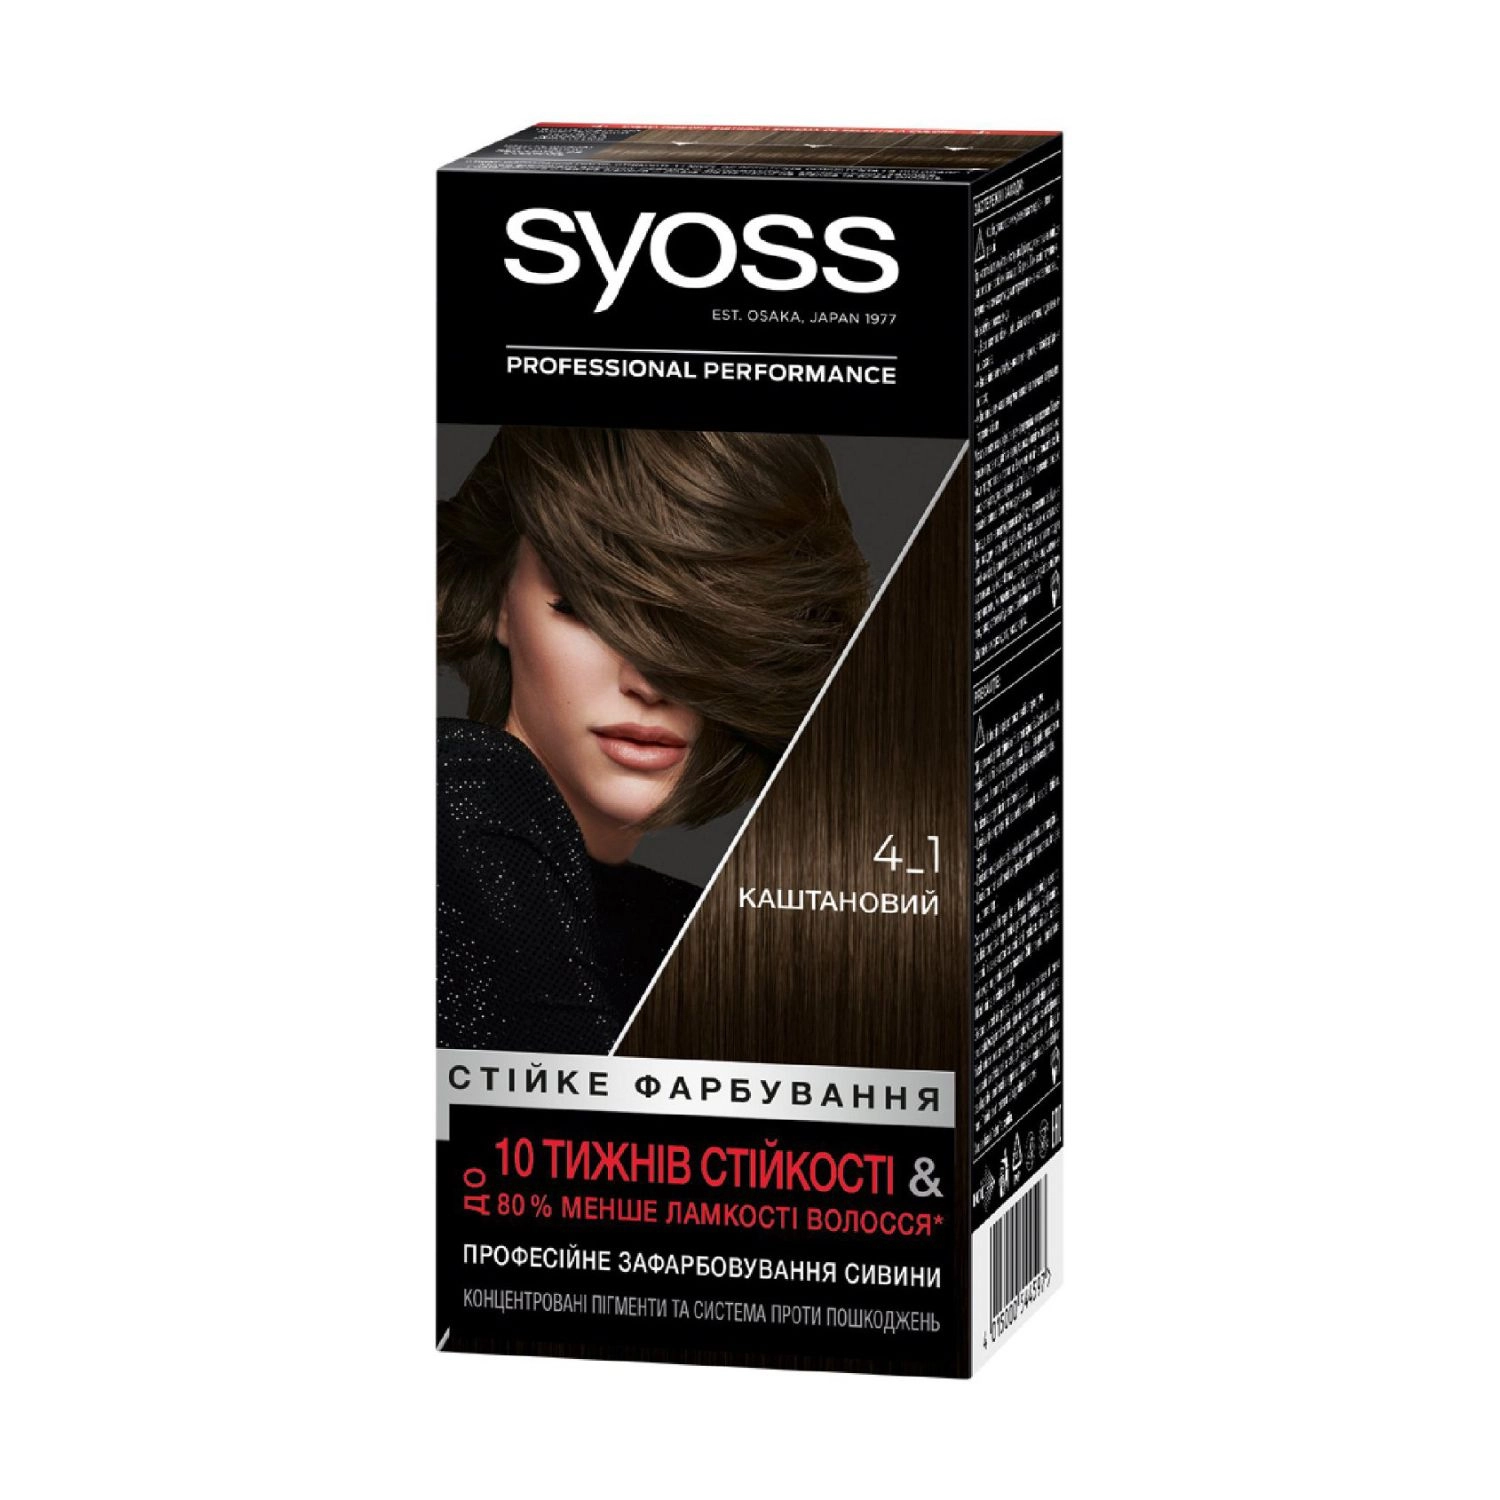 SYOSS Стойкая крем-краска для волос 4-1 Каштановый, 115 мл - фото N1